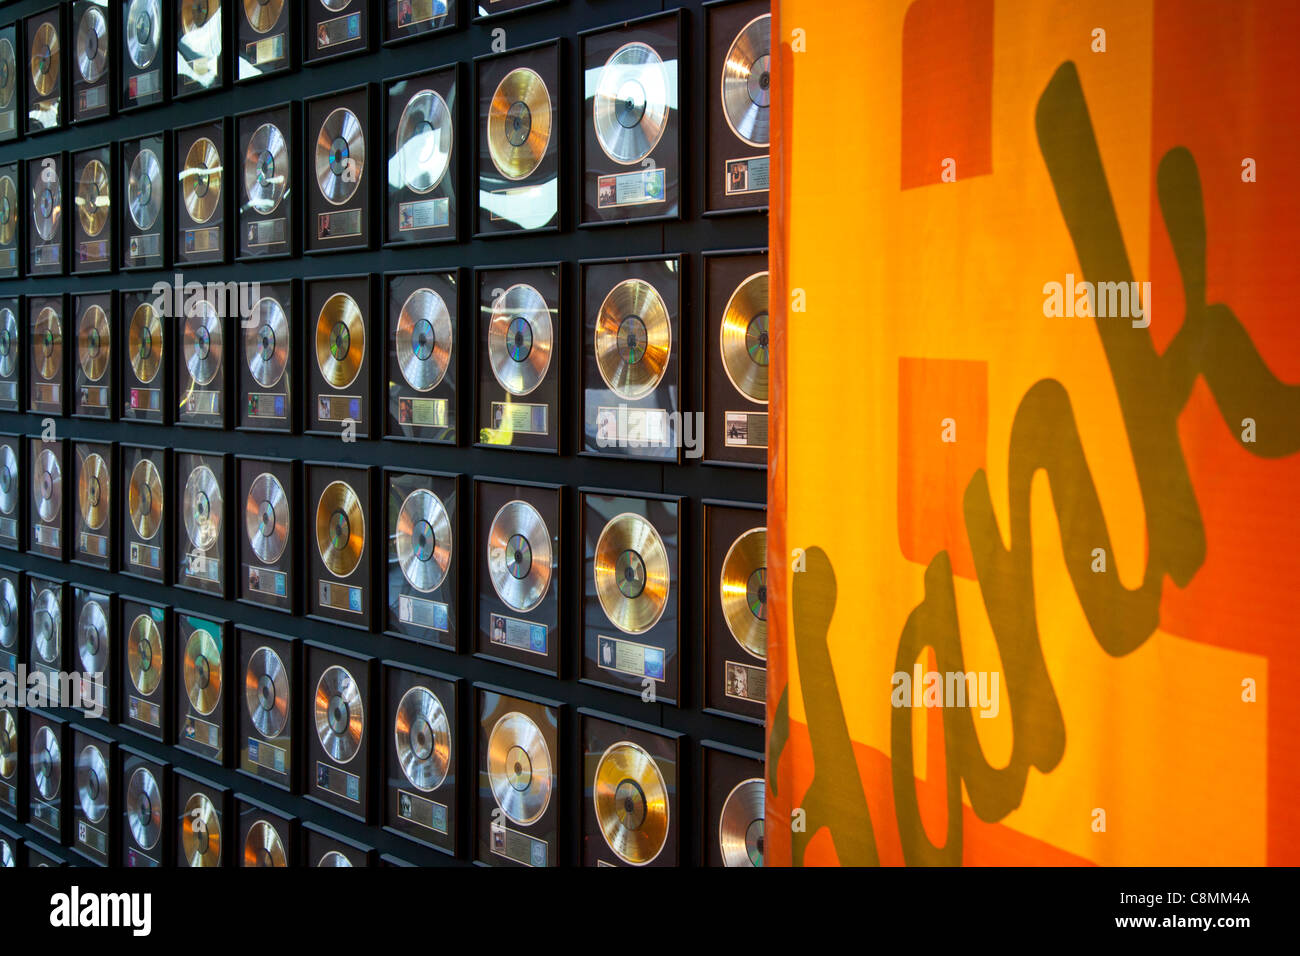 Display Wall piena di oro e platino i record presso il Country Music Hall of Fame in Nashville Tennessee USA Foto Stock